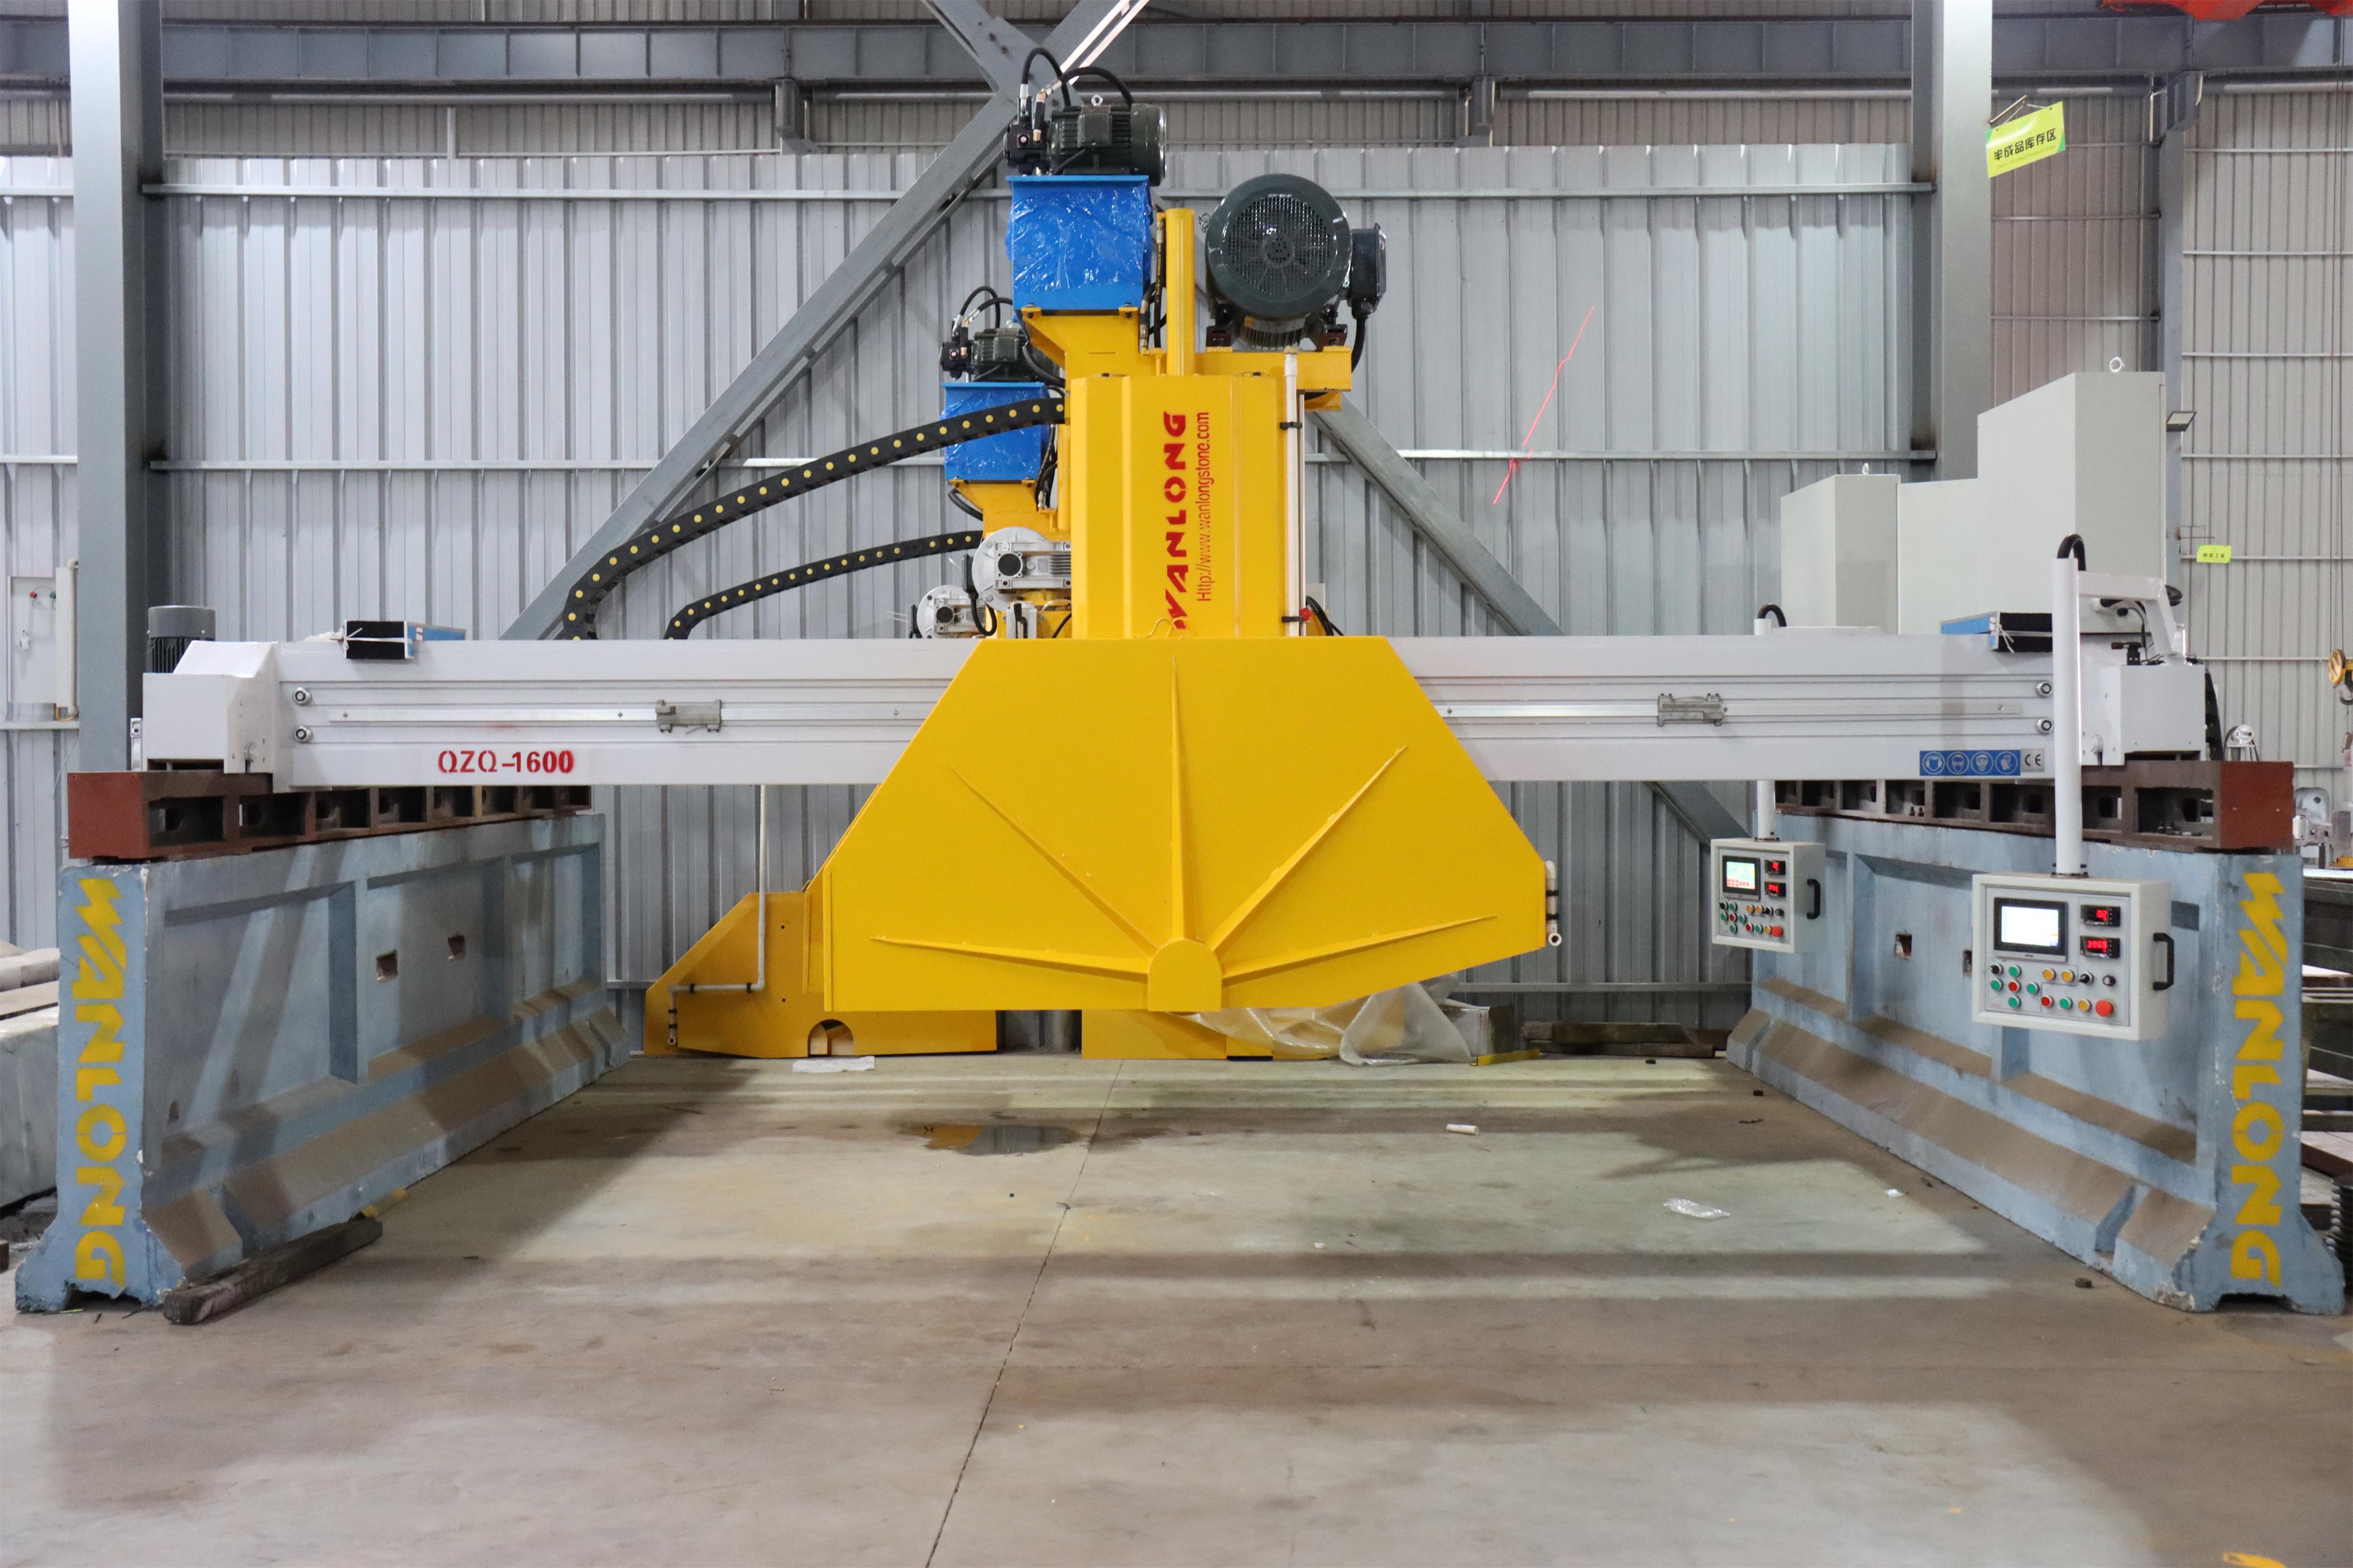 ВАНЛОНГ КЗК-900/1200 Аутоматски ласерски мост је сечење машине за сечење за гранит мермерни камен